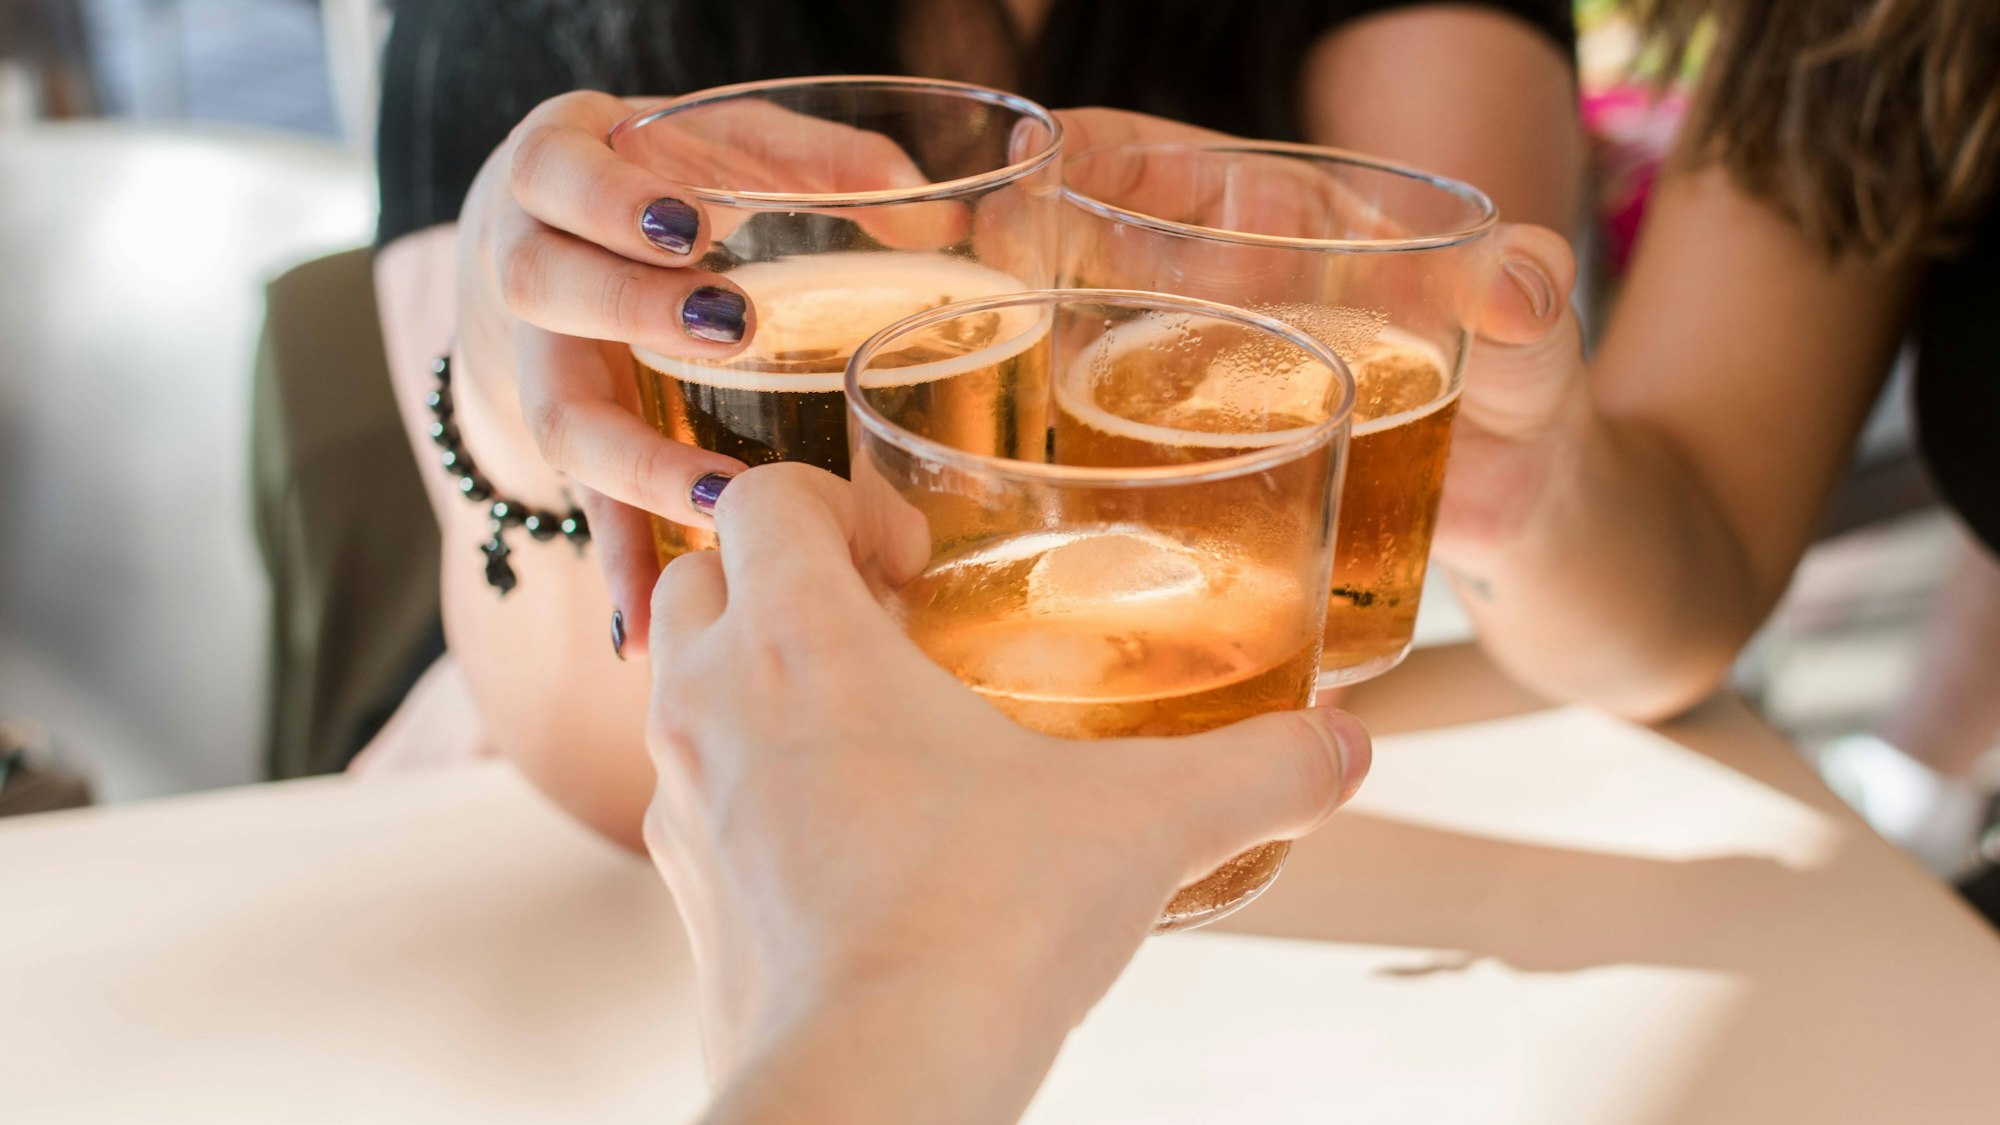 Personen stoßen mit alkoholischen Getränken an. Laut einer neuen Empfehlung der Deutschen Hauptstelle für Suchtfragen ist jeder Alkoholkonsum schädlich, auch in kleinen Mengen. (Symbolbild)